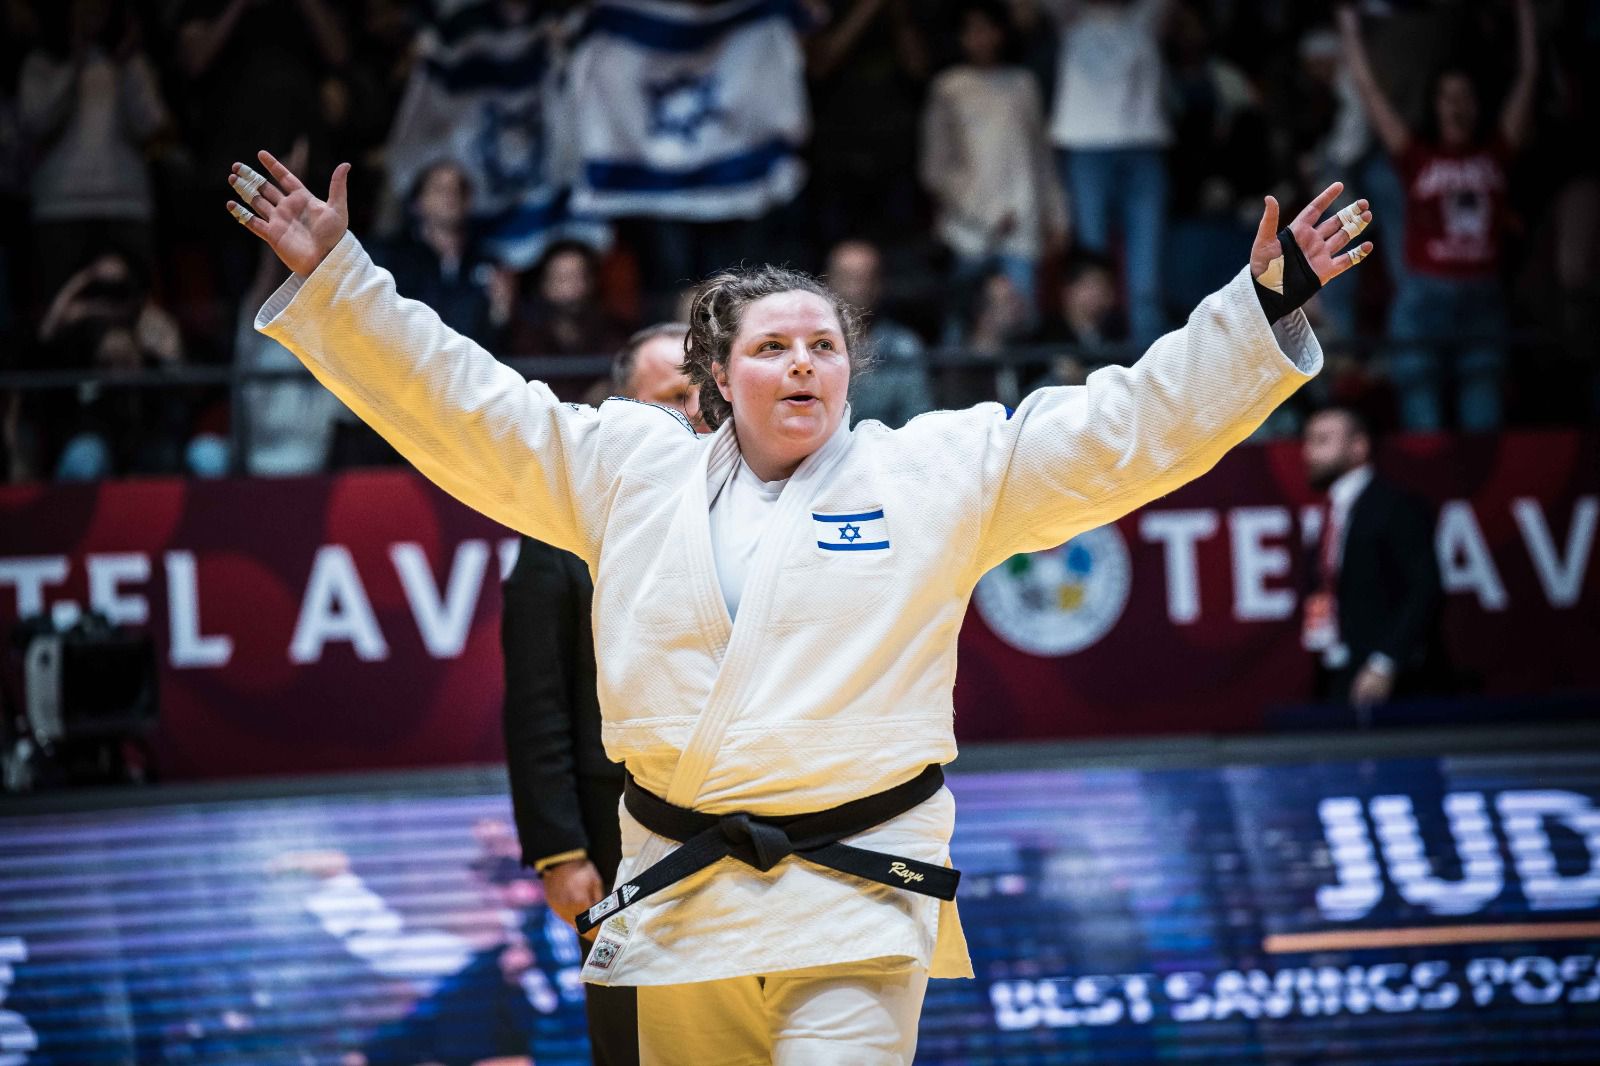 רז הרשקו זוכה במדליית הזהב בגרנד סלאם תל אביב 2023 (צילום: עודד קרני, איגוד הג'ודו בישראל)